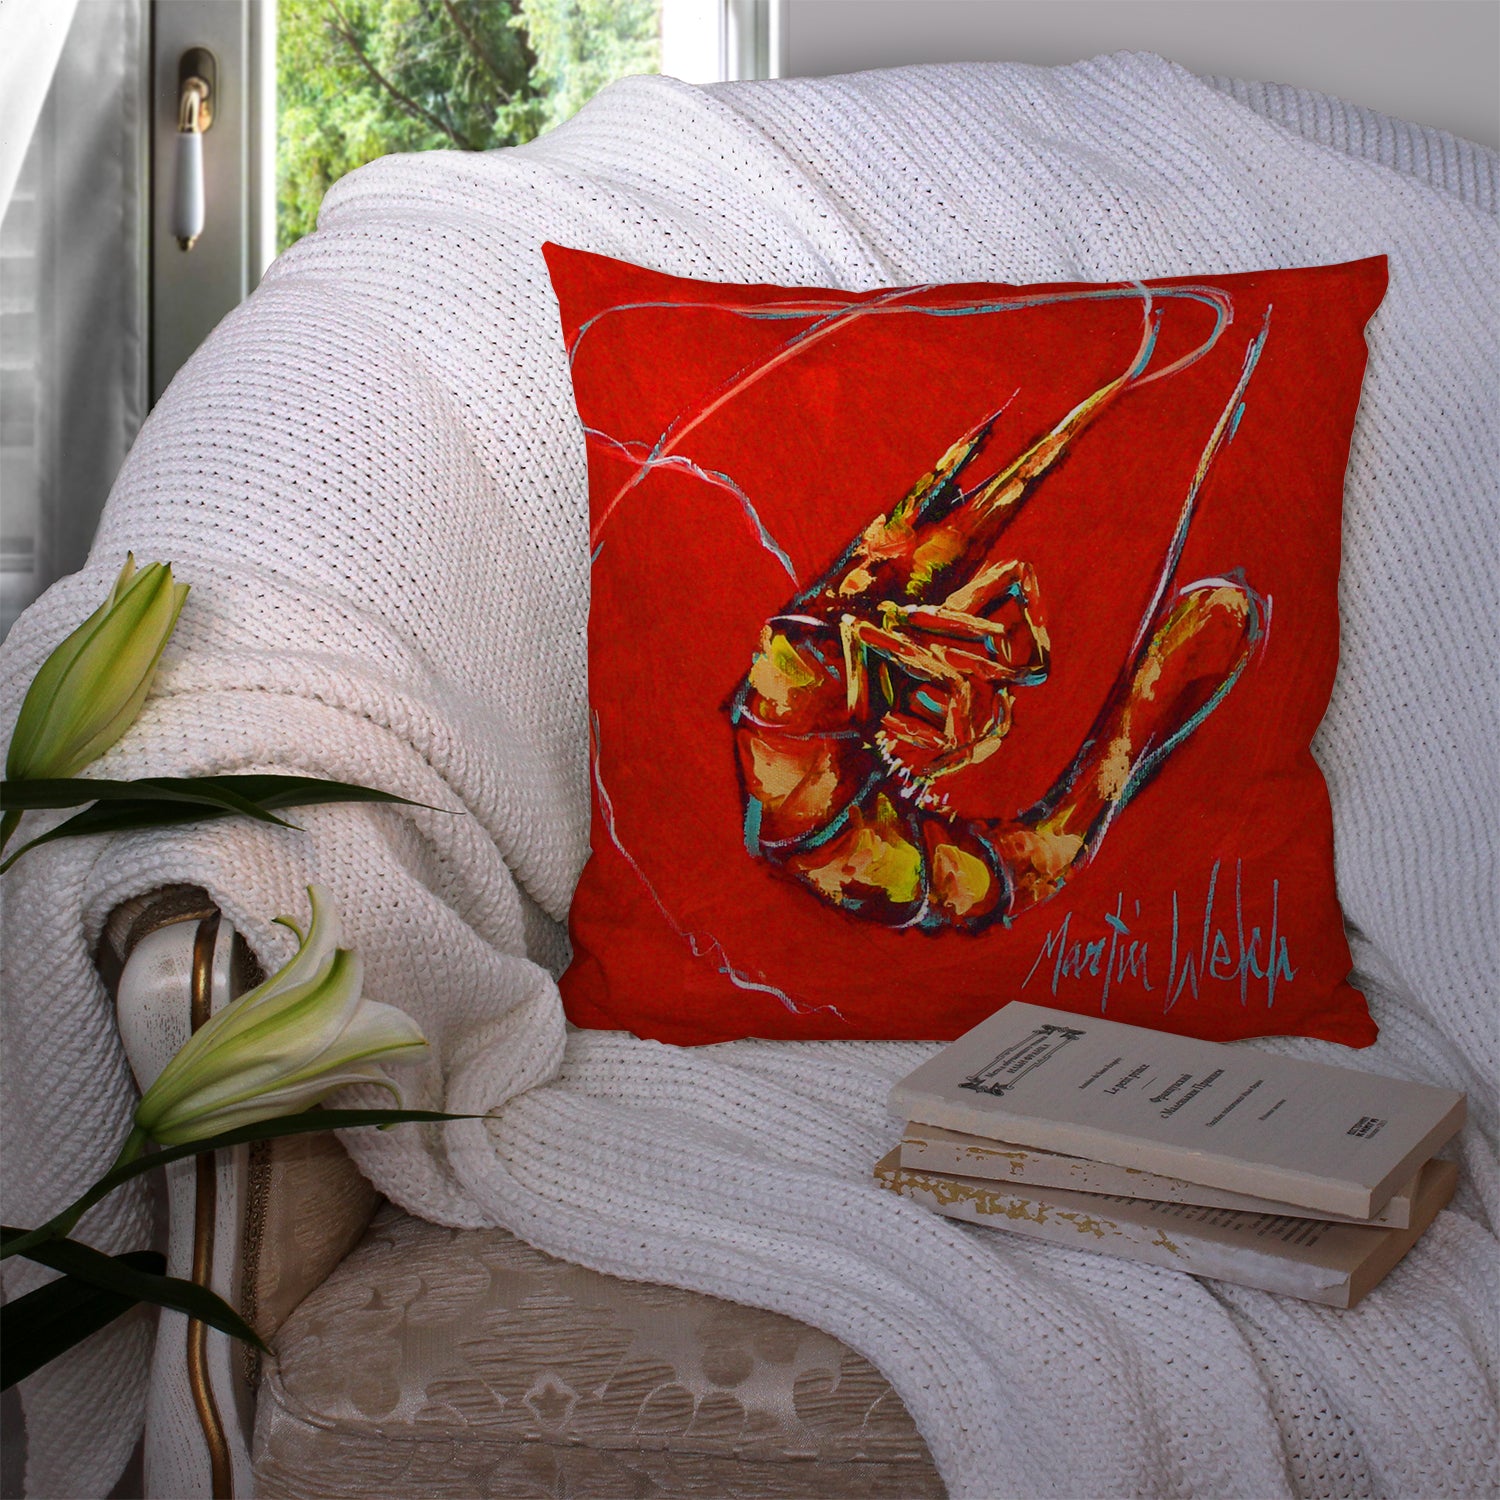 Red Shrimp Fabric Decorative Pillow MW1347PW1414 - the-store.com